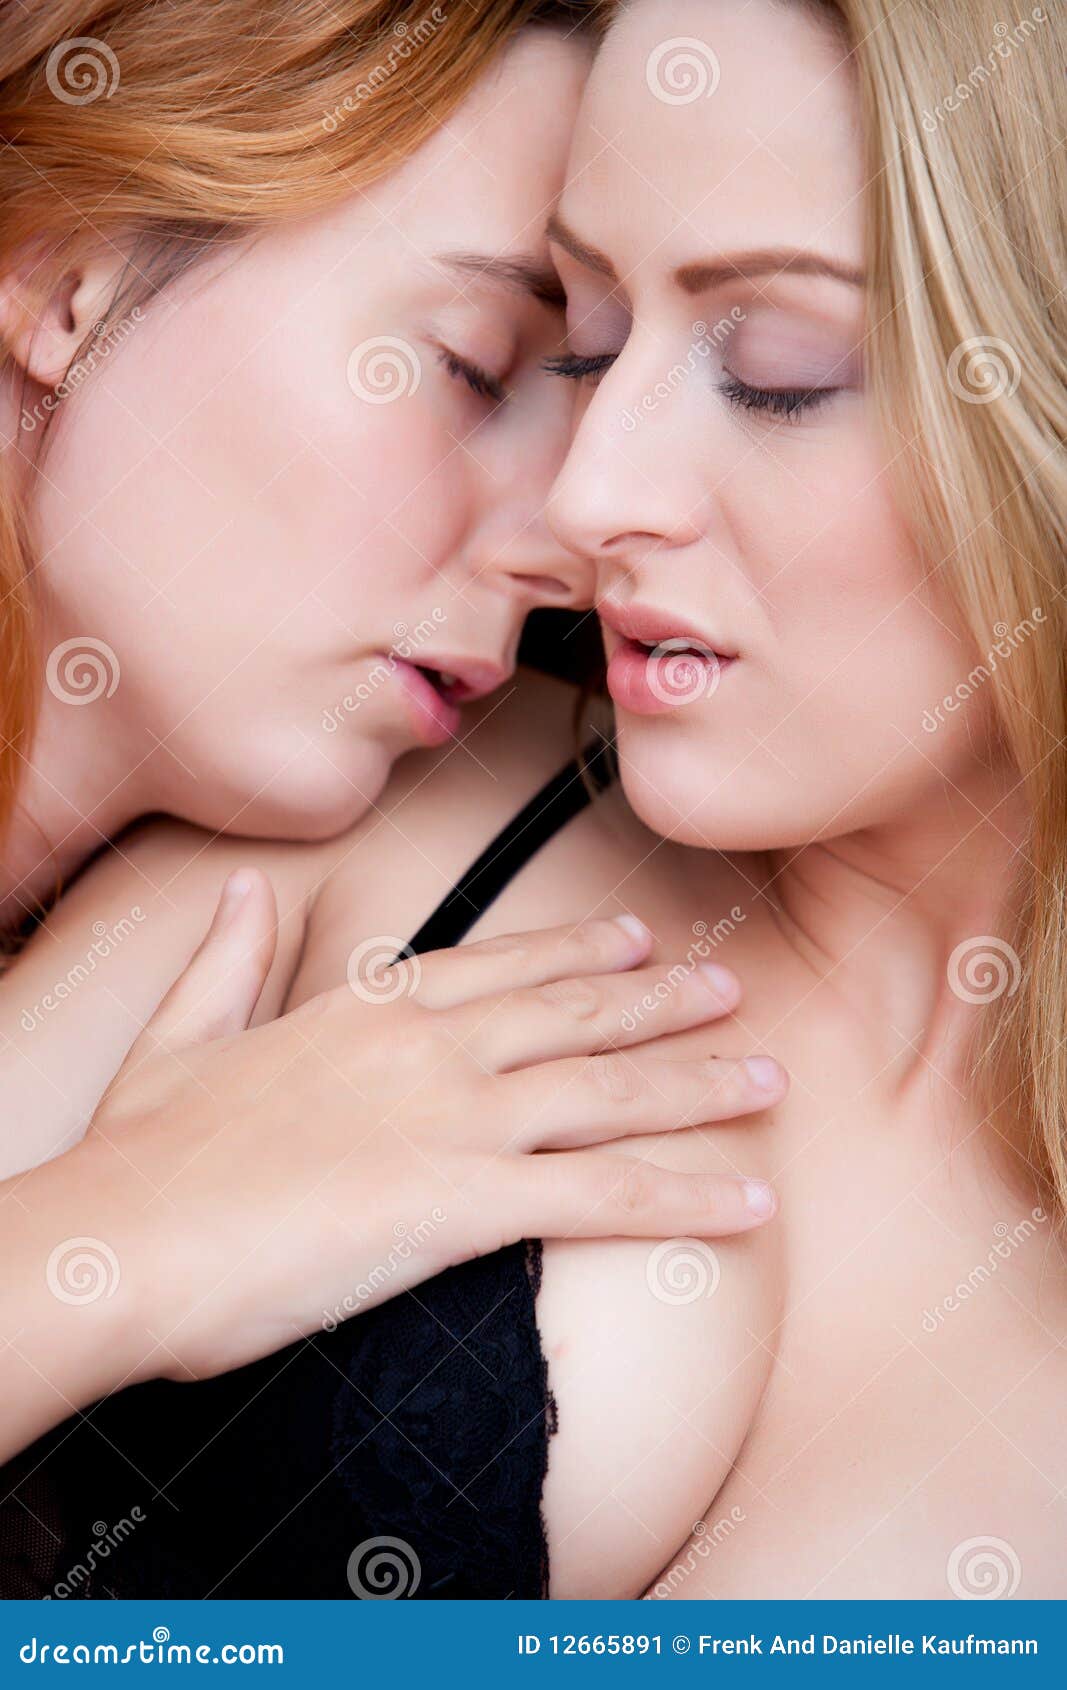 cindy cuomo add photo hot sexy teenage lesbians